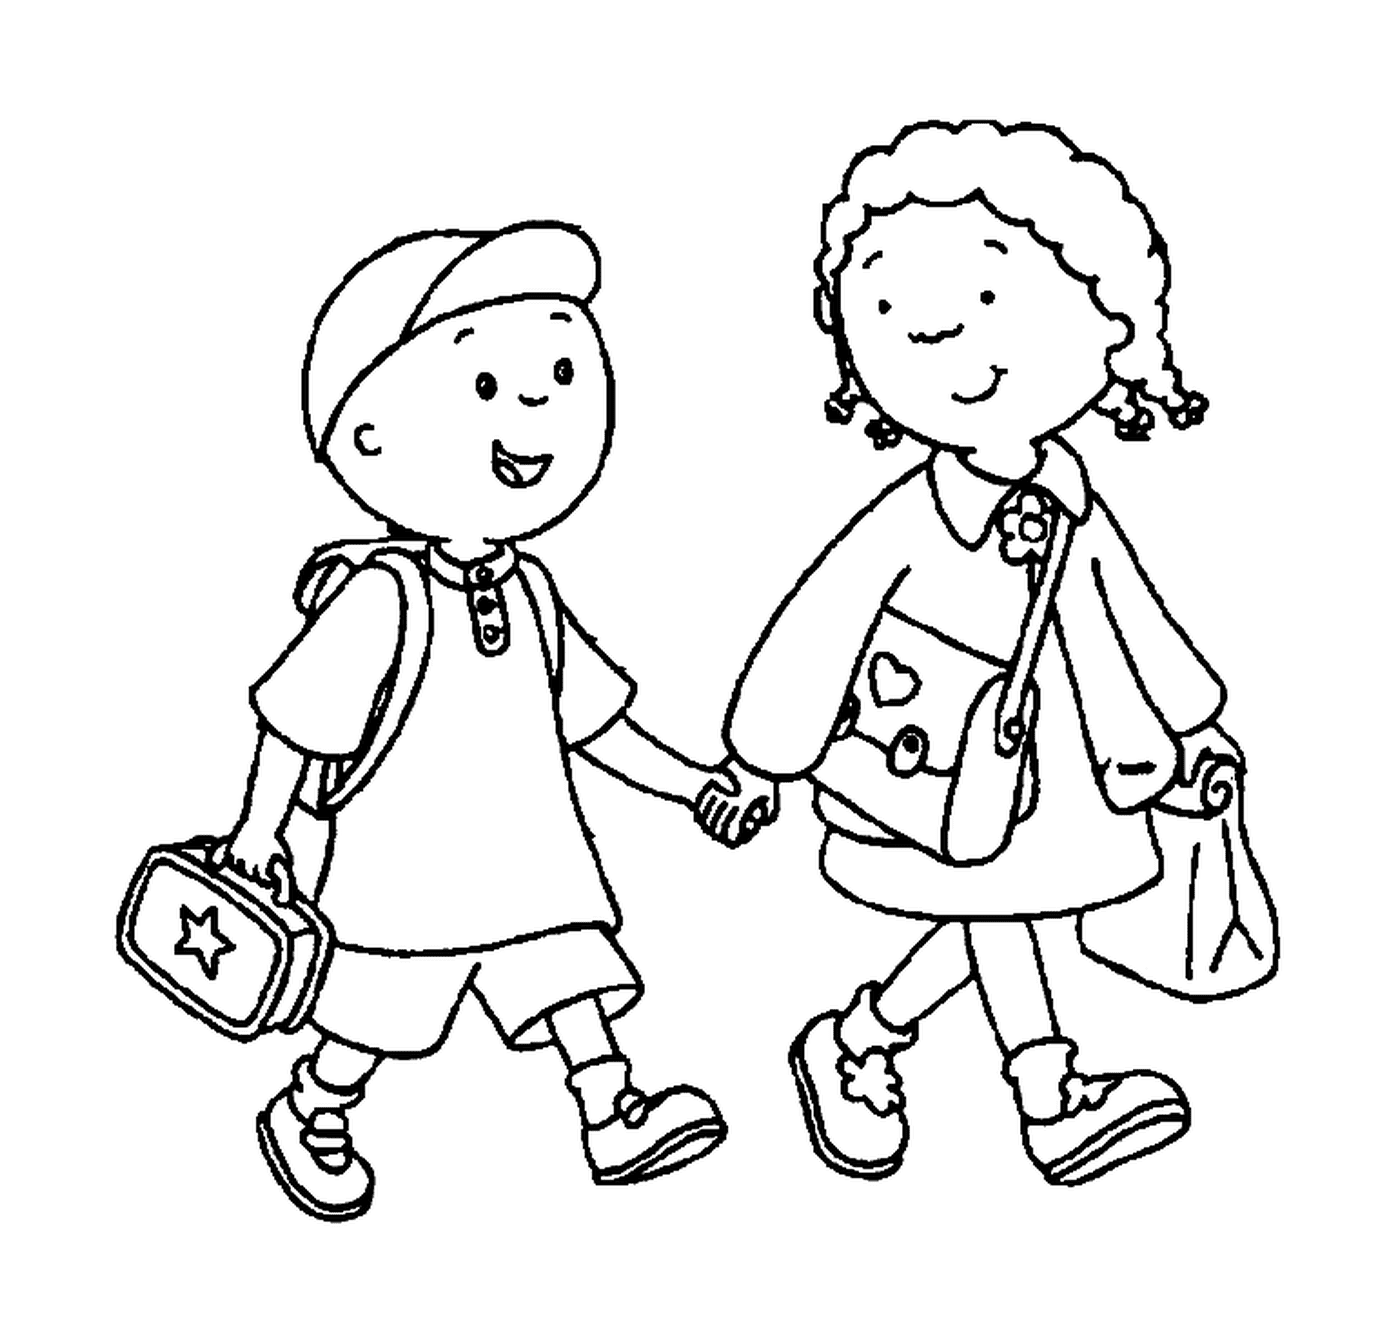  Un hermano y una hermana tomados de la mano para ir a la escuela 